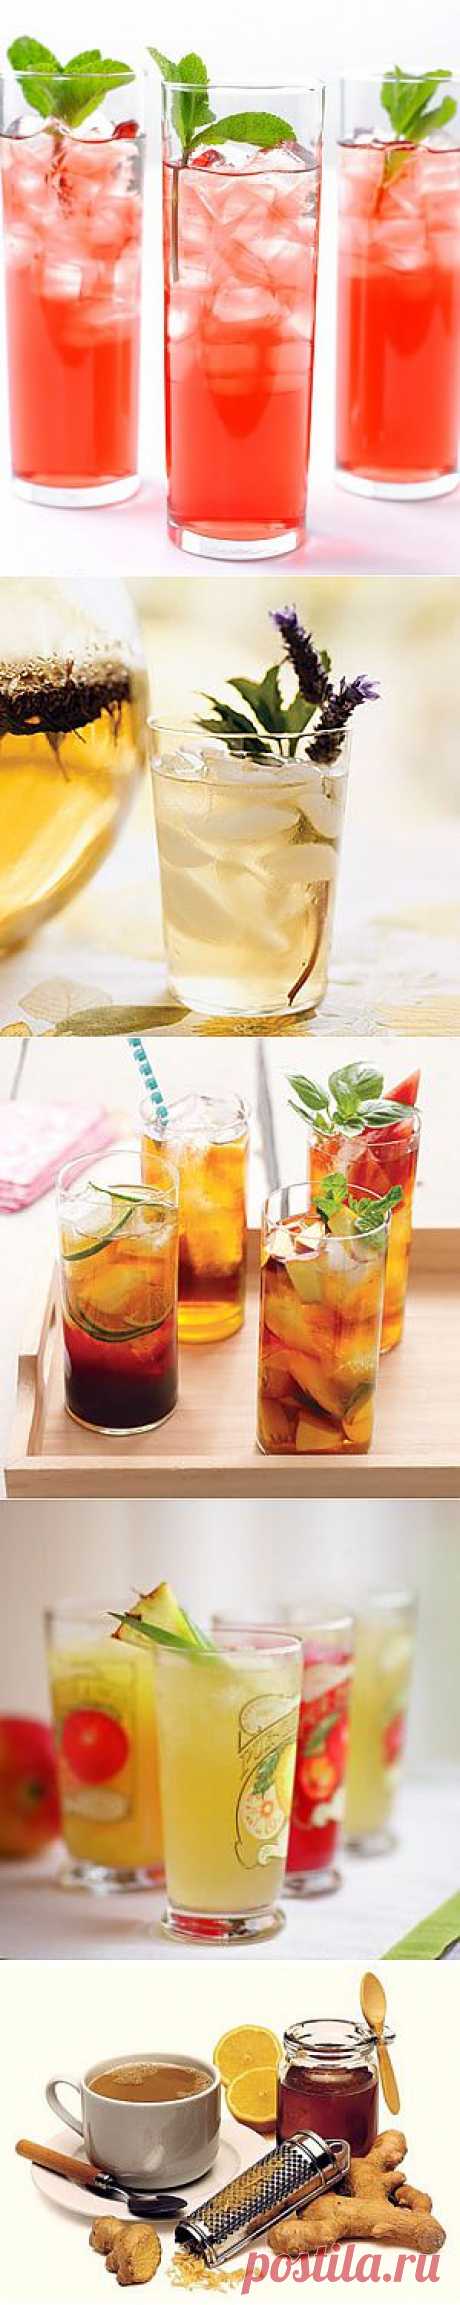 Рецепт 10 рецептов освежающего и полезного ледяного чая с фото в домашних условиях